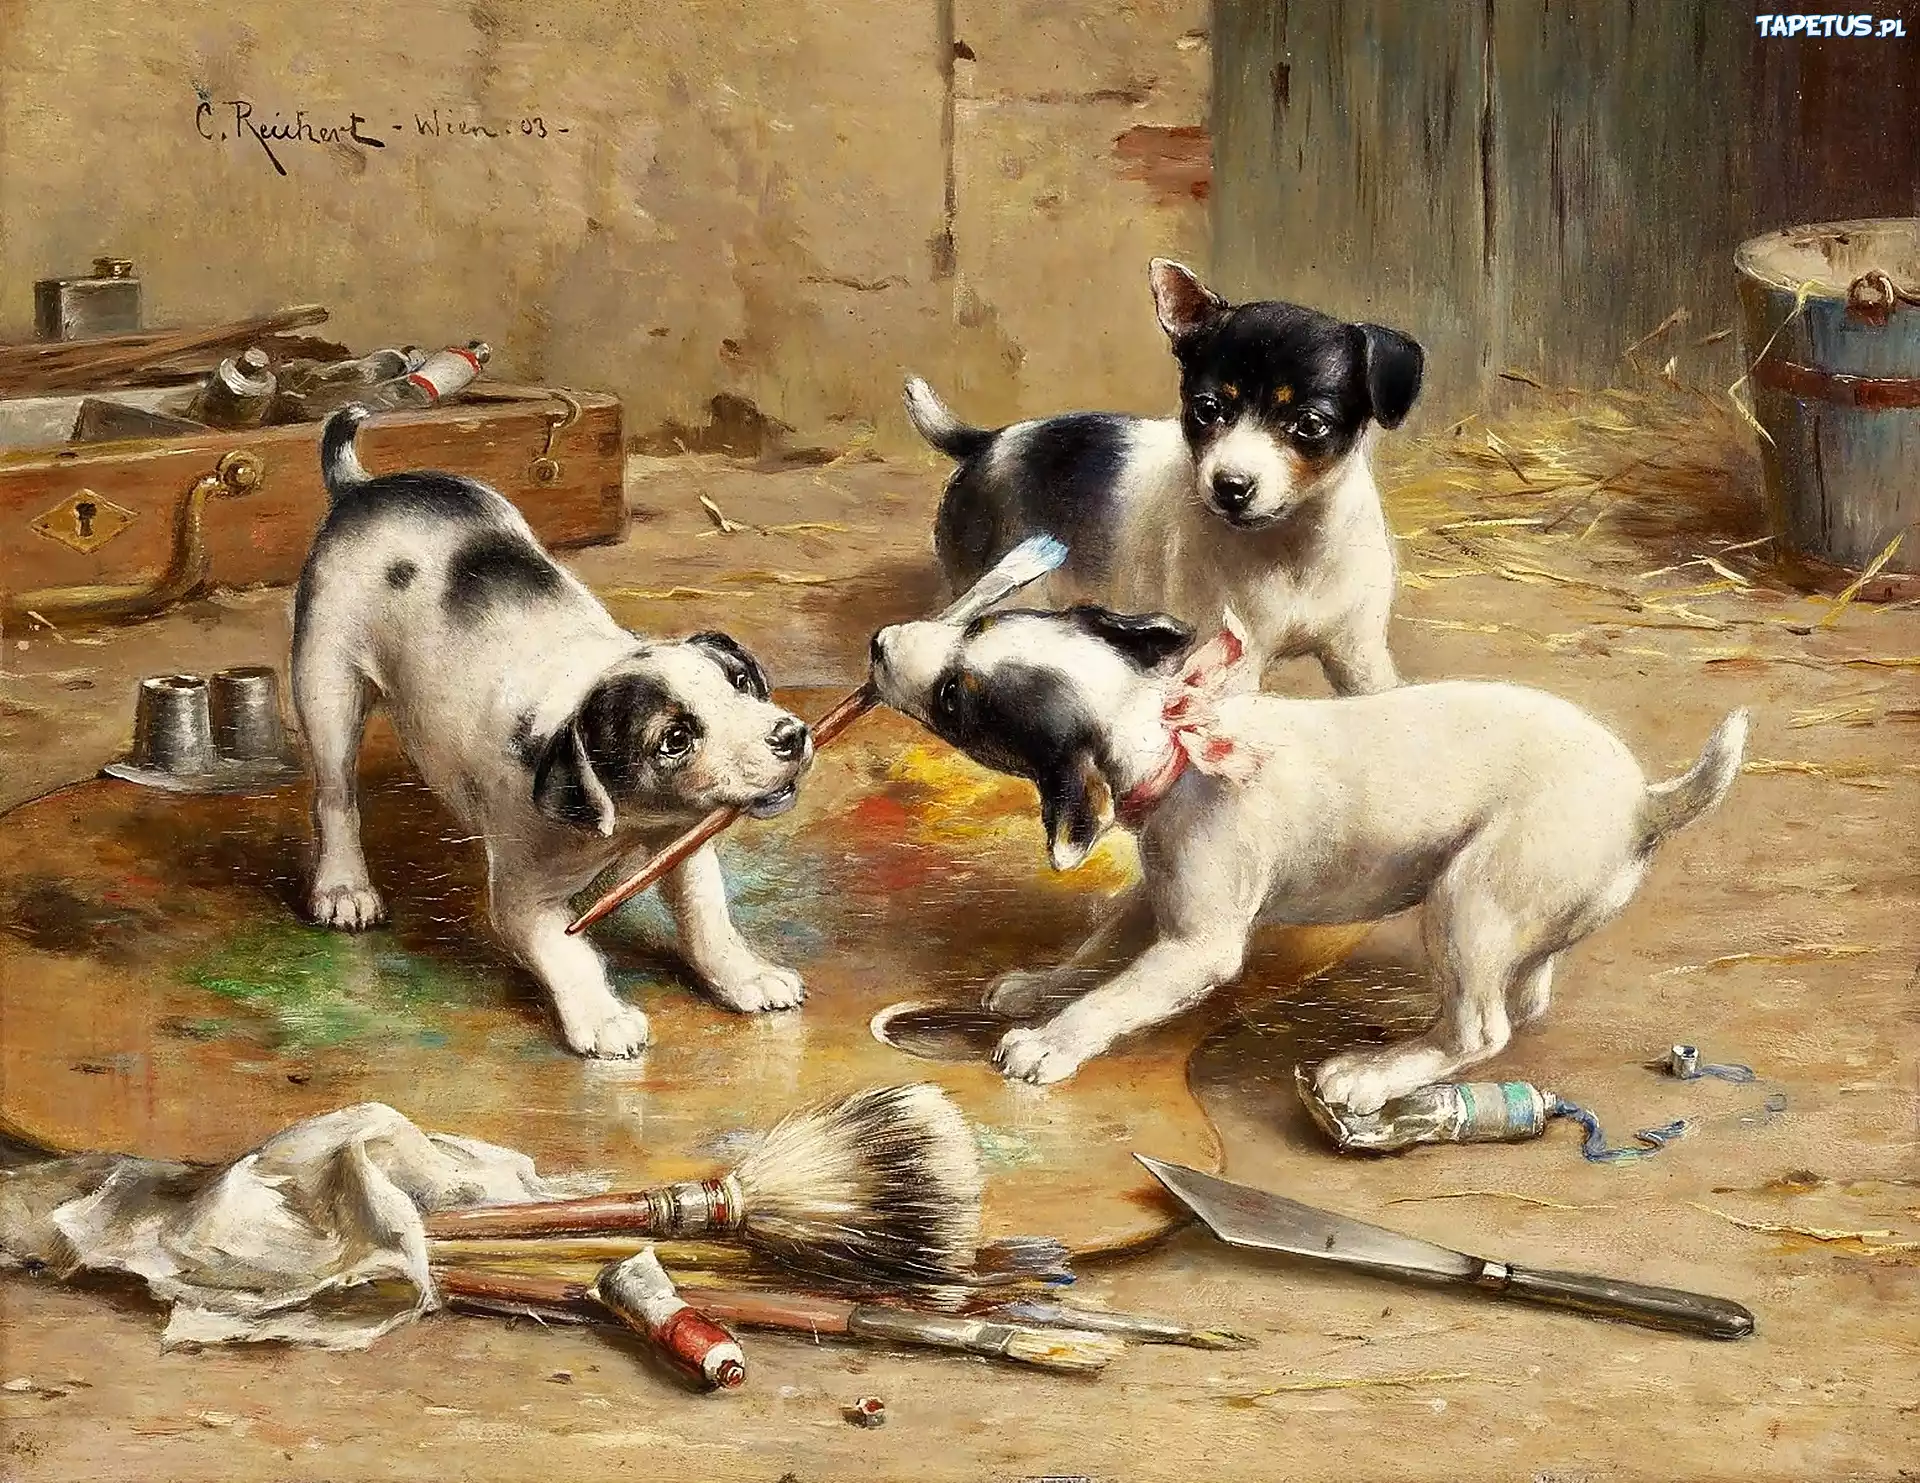 Как собаки сюжет. Художник Carl Reichert (1836-1918).